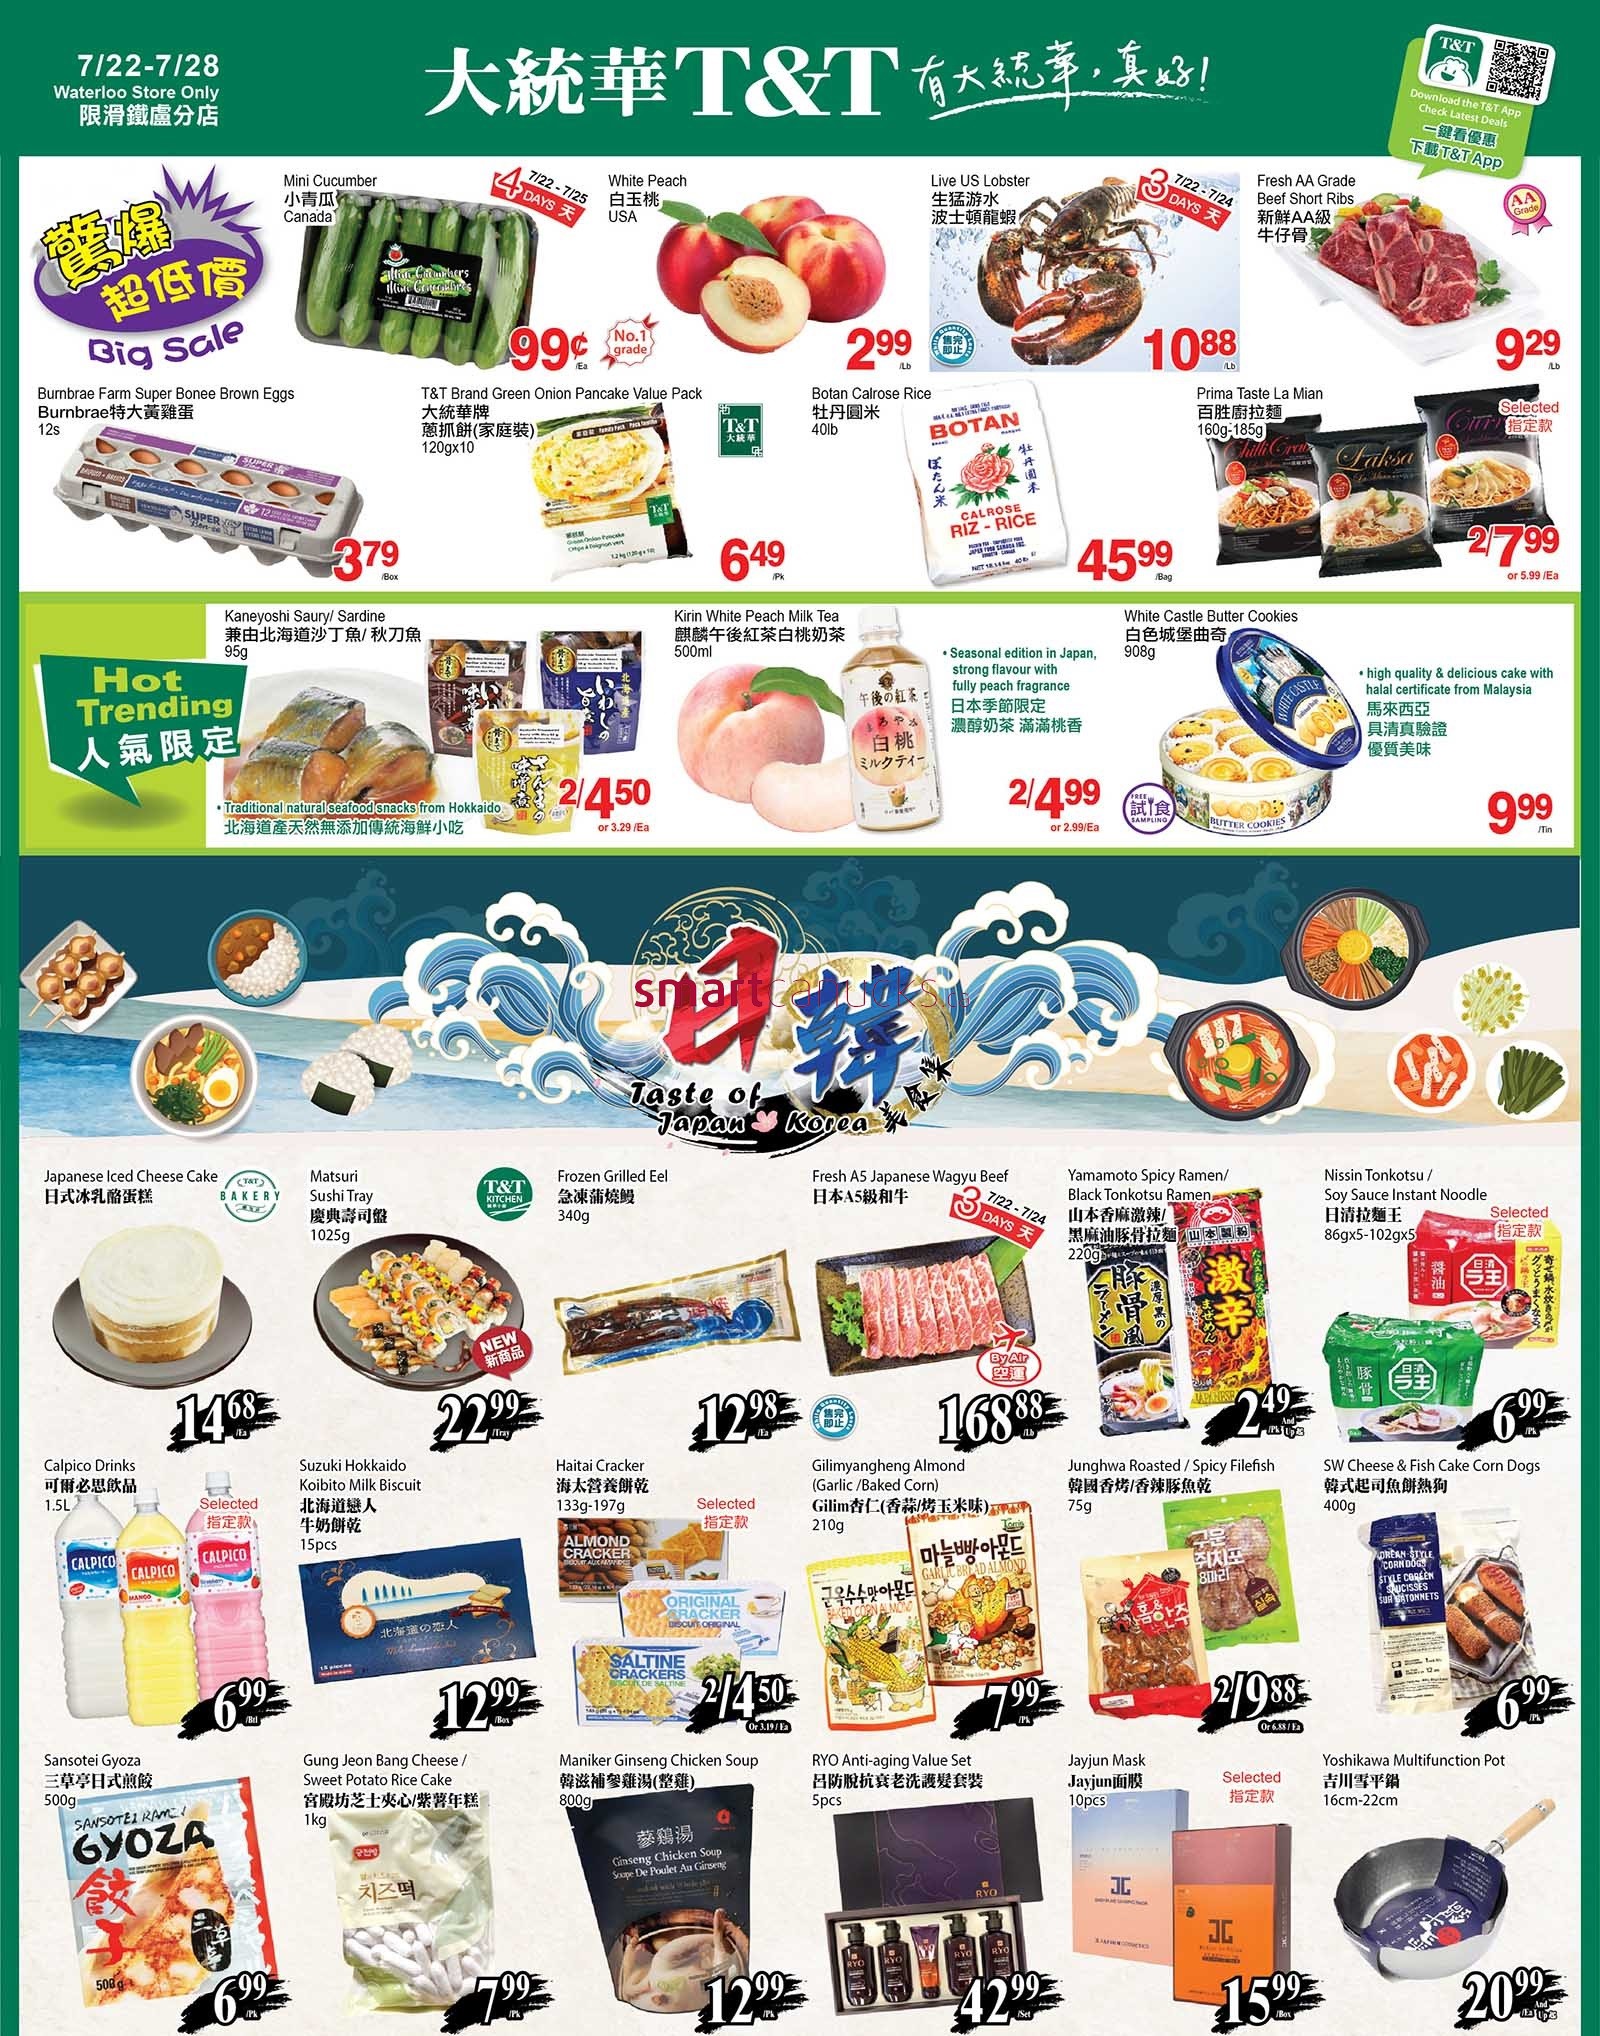 tt-supermarket-waterloo-flyer-july-22-to-28-1.jpg